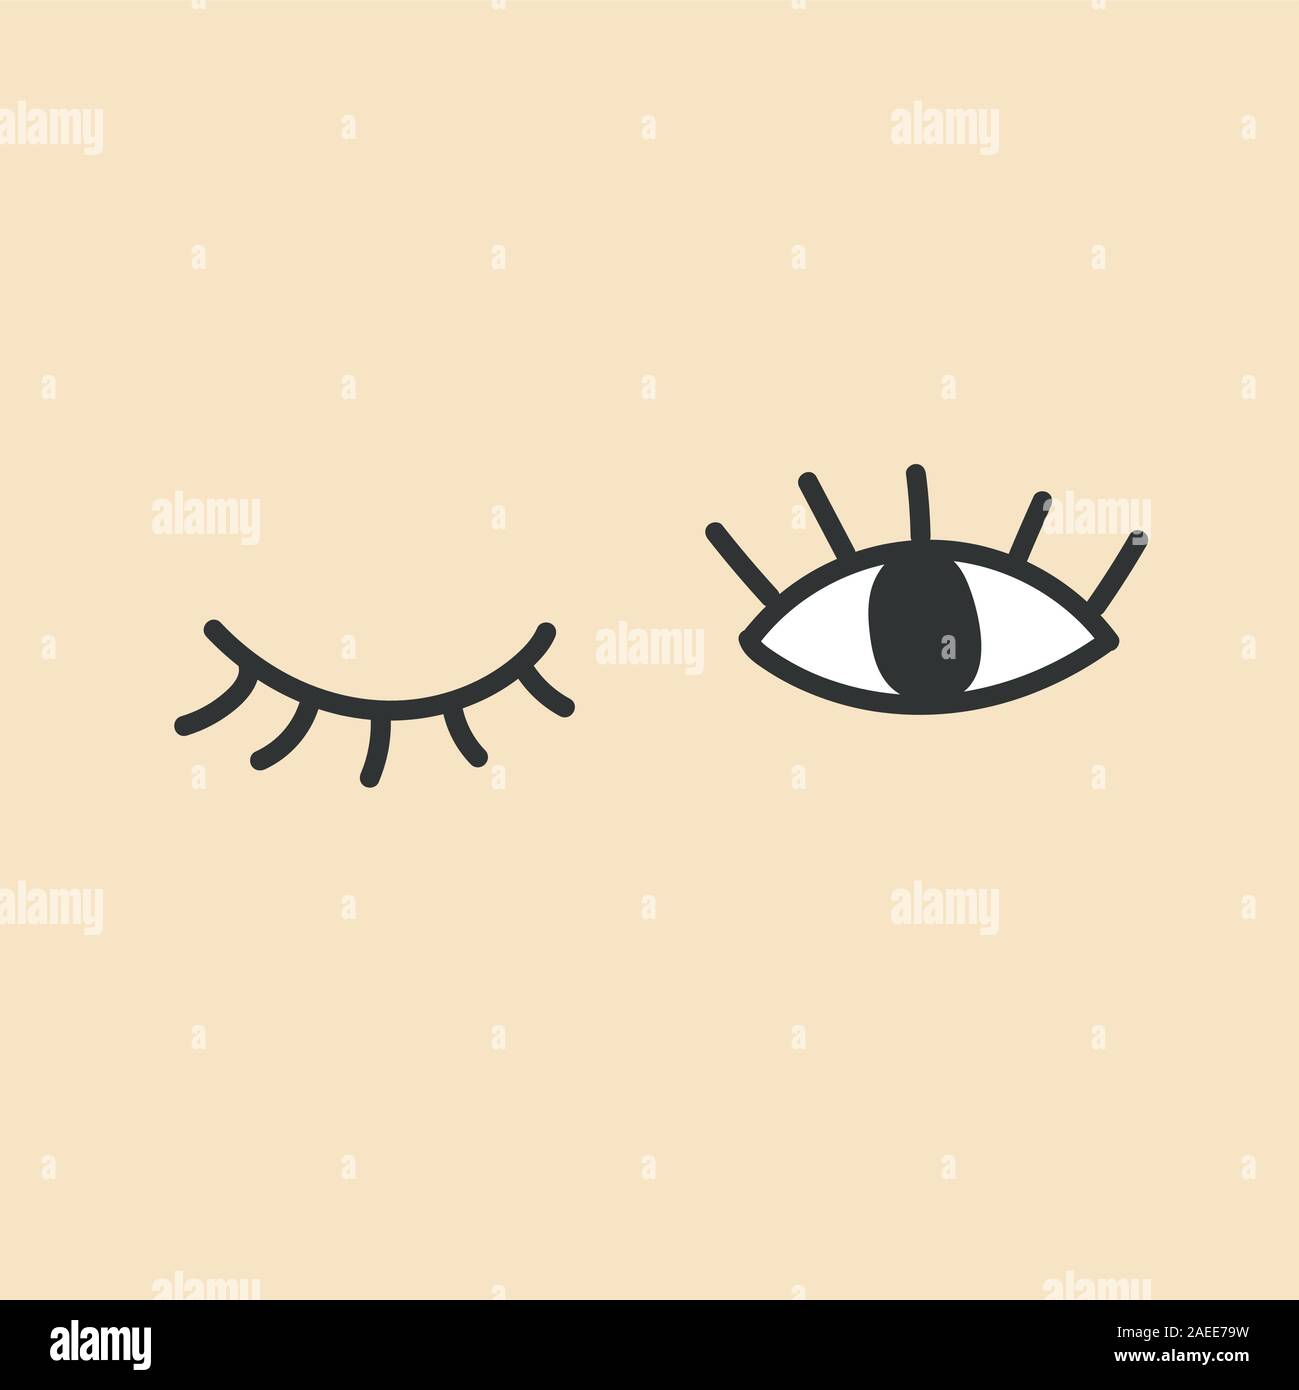 Hand gezeichnet Auge doodles. Öffnen und zwinkern die Augen  Stock-Vektorgrafik - Alamy